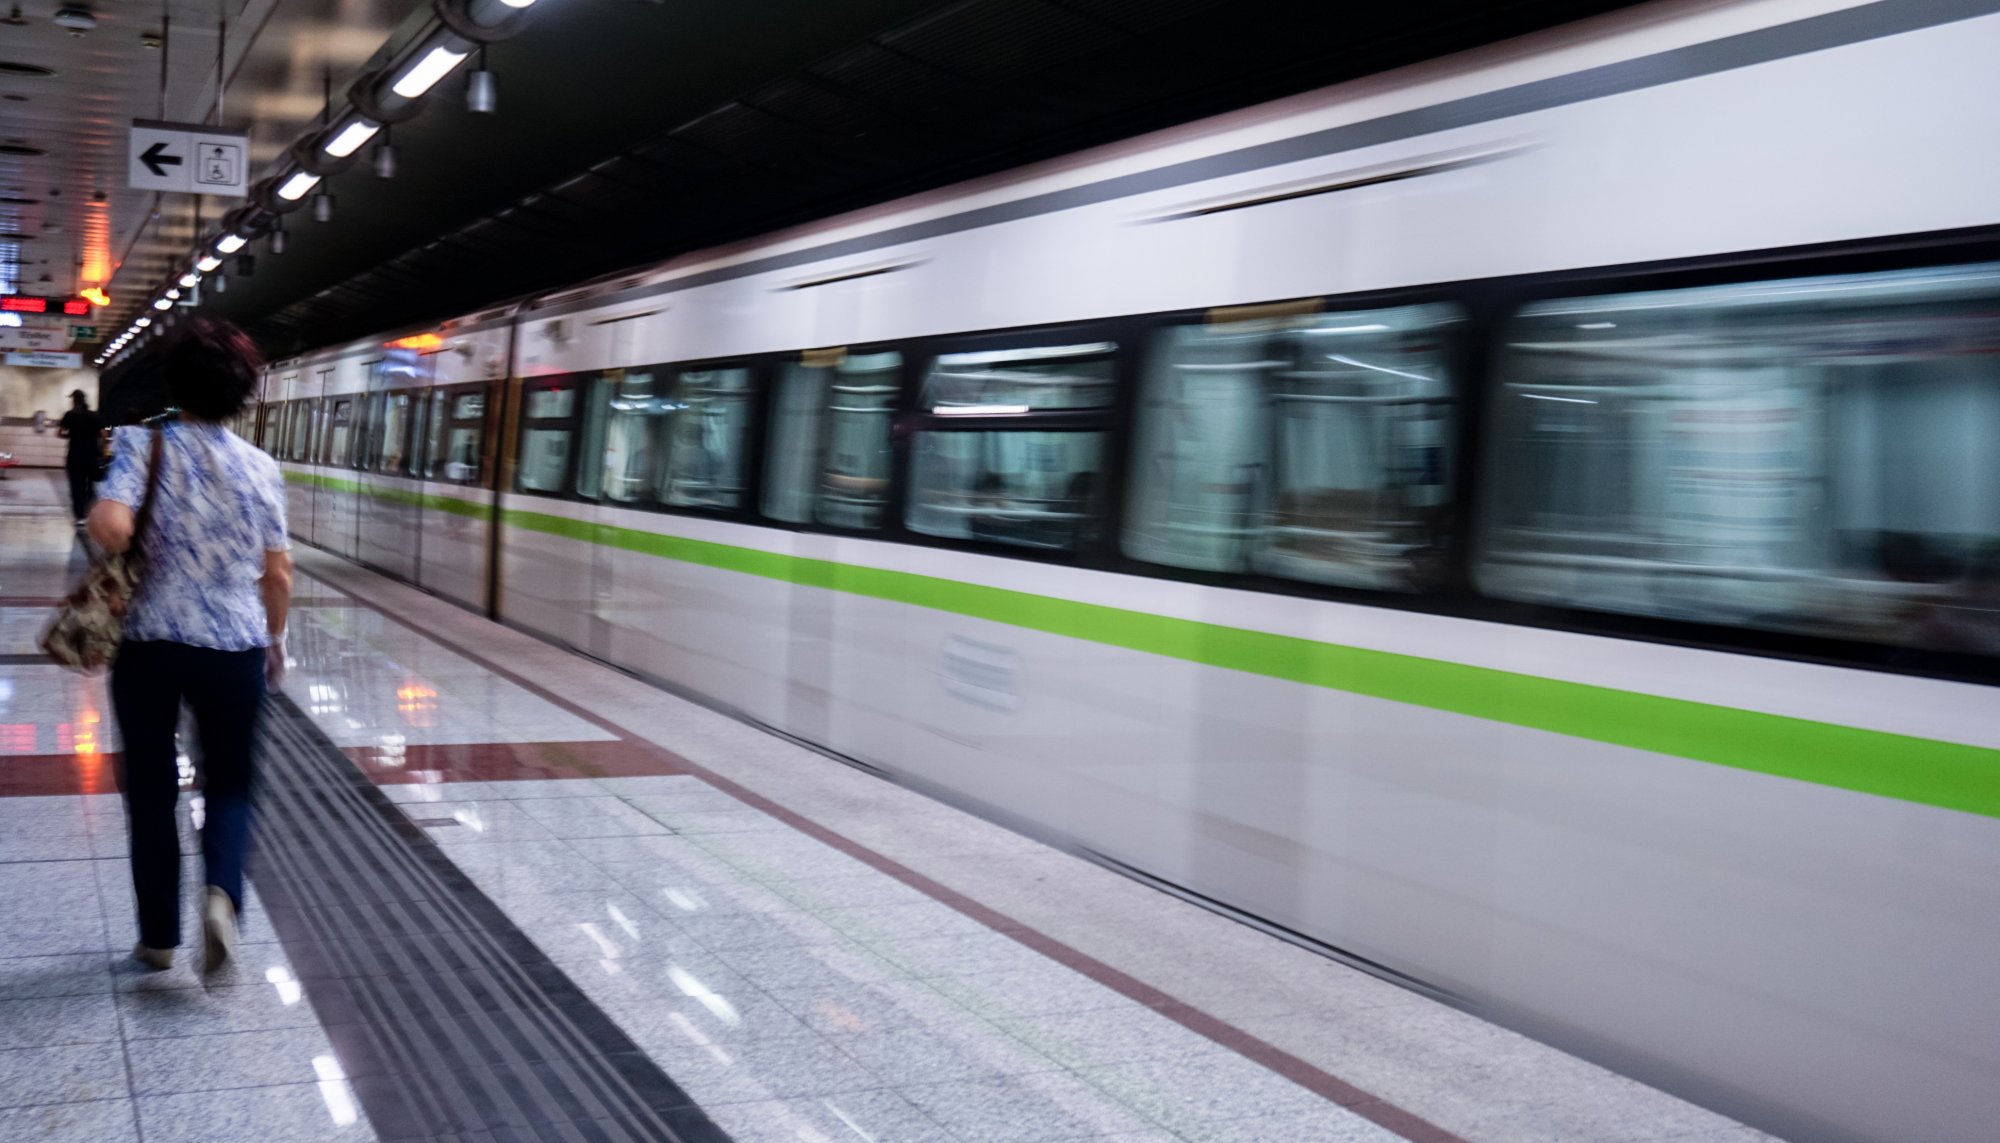 Υπ. Υποδομών και Μεταφορών: Εγκρίθηκε χρηματοδότηση για την ανακαίνιση 14 συρμών της γραμμής 1 του Μετρό